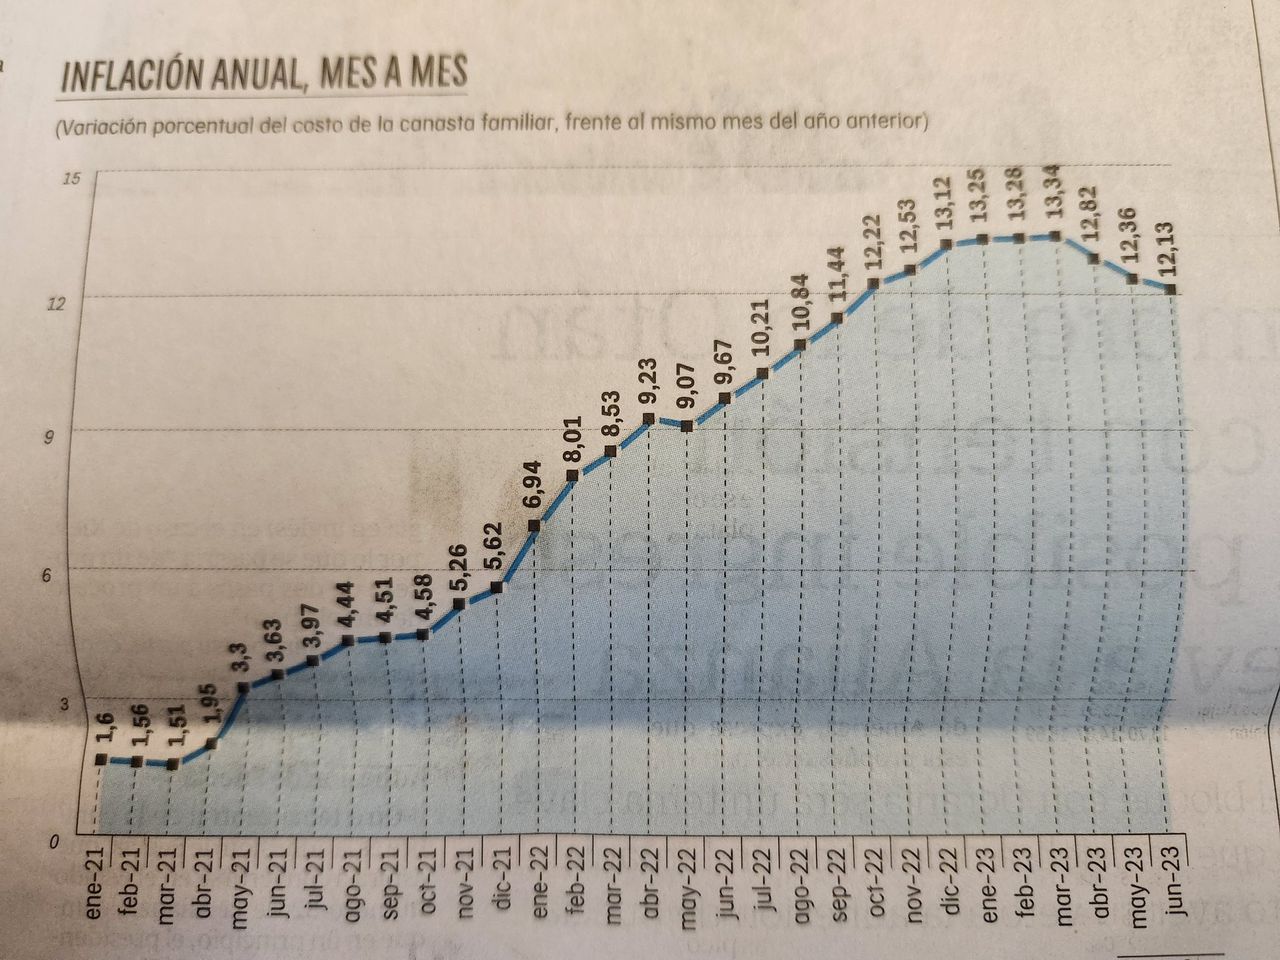 Gráfico de inflación anual, mes a mes. Foto publicada por el presidente Gustavo Petro